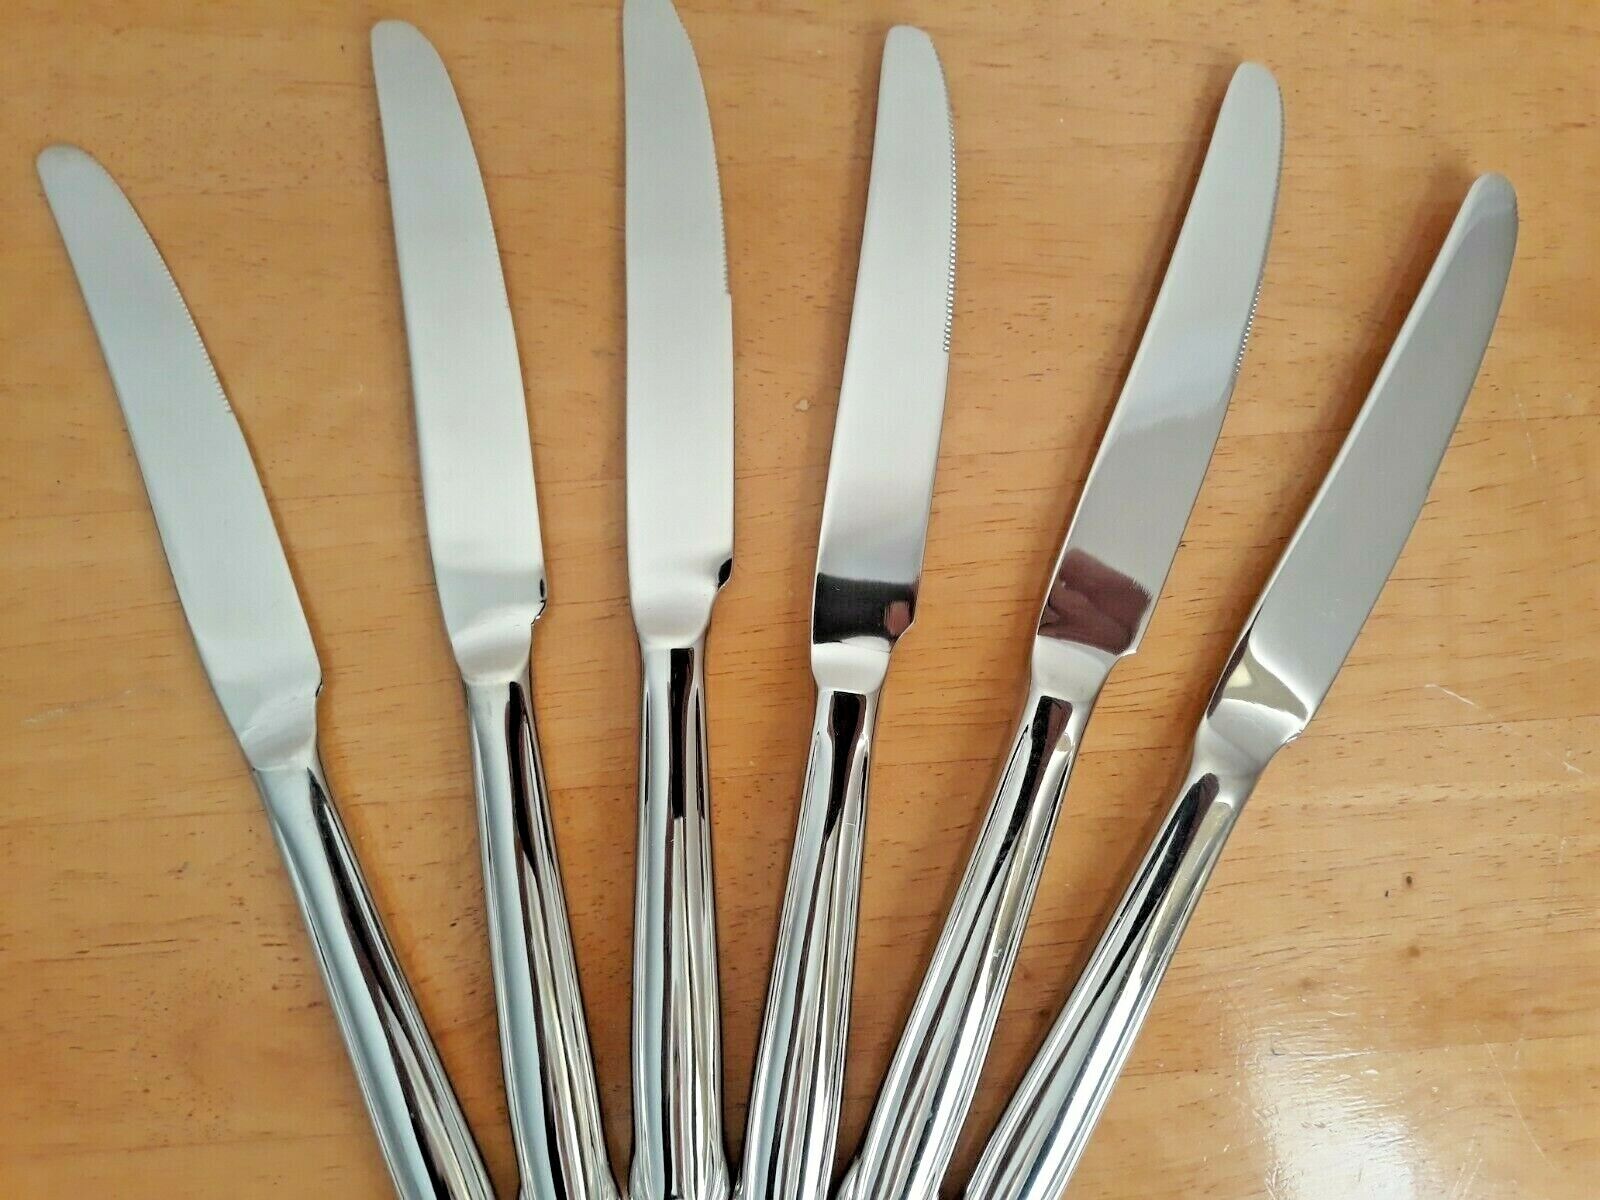 Stainless Steel Dinner Knife Knives Set Of 6 Flatware Made in Korea